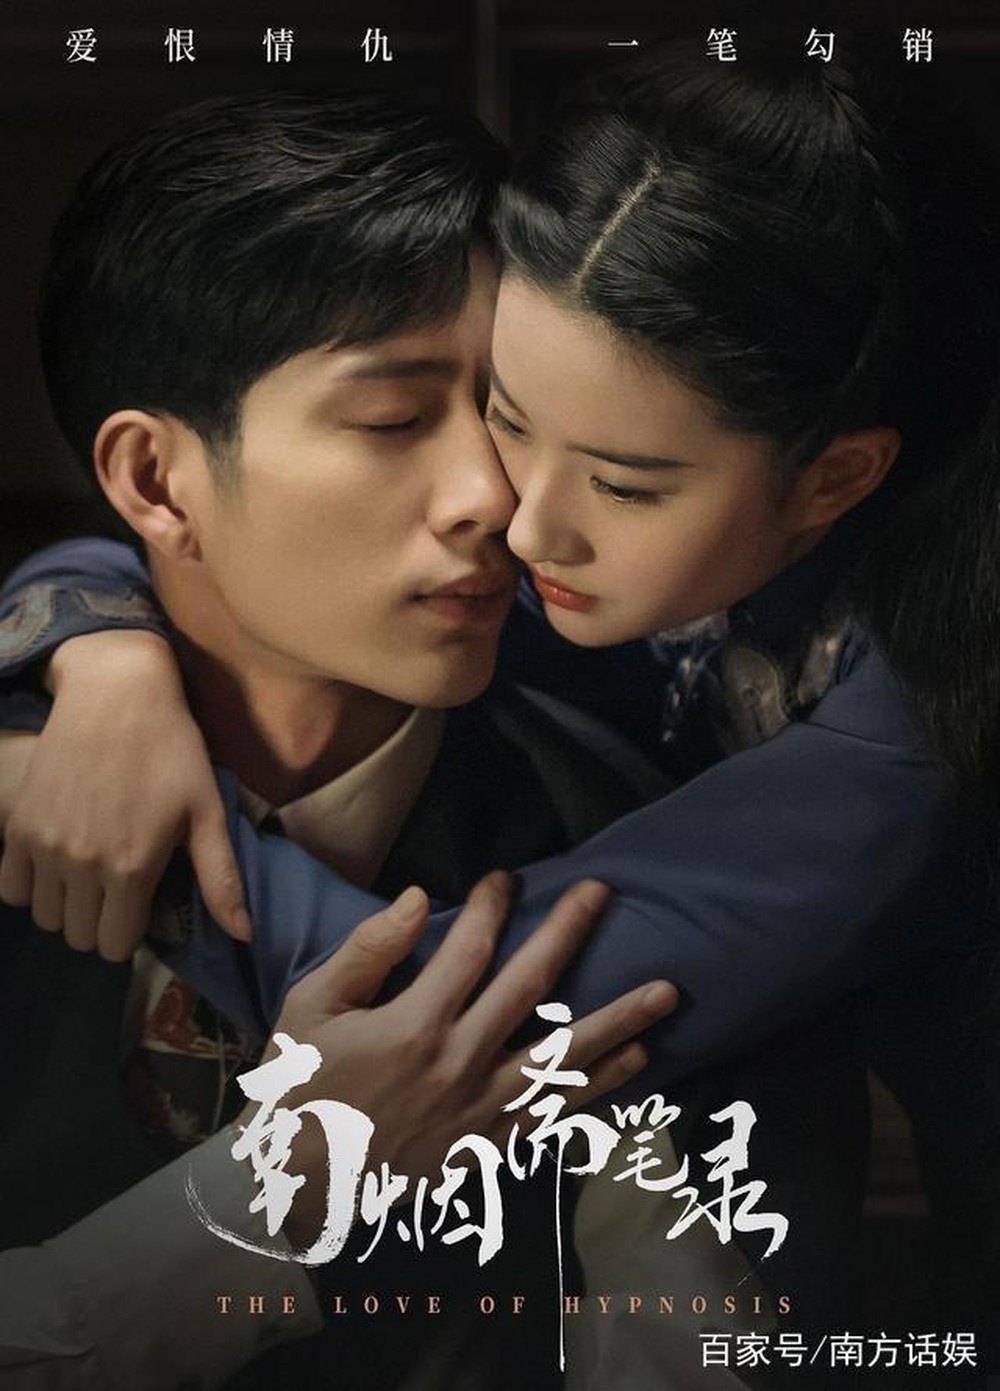  
Poster phim Nam Yên Trai Bút Lục